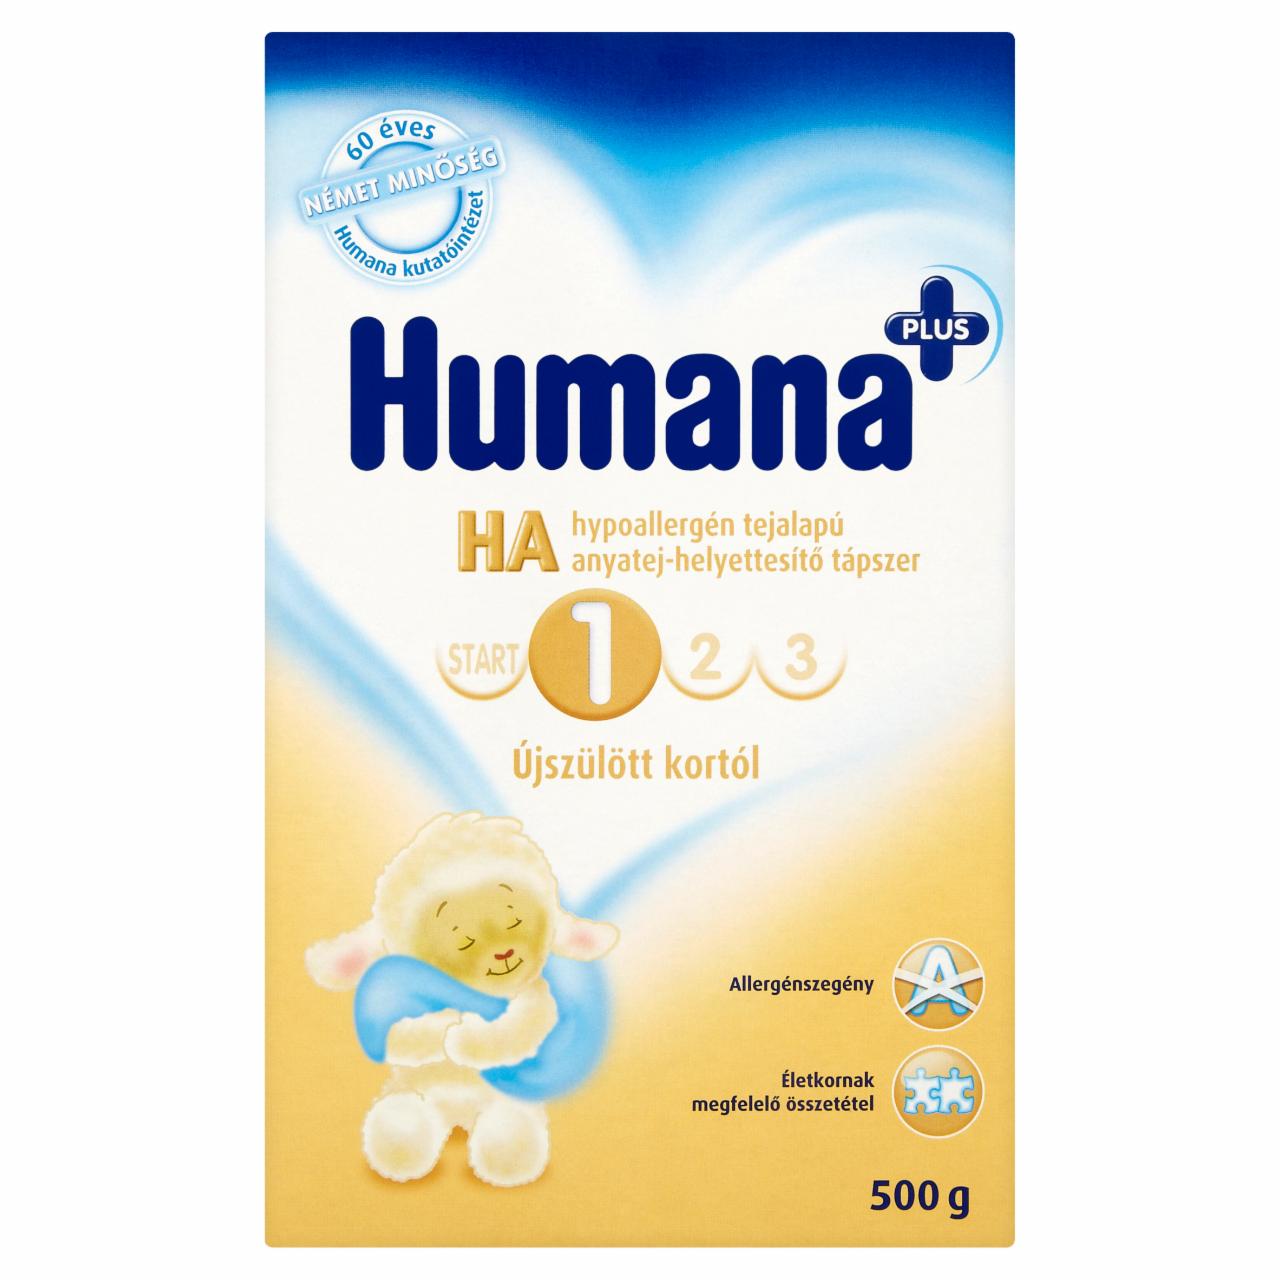 Képek - Humana HA 1 Plus hypoallergén tejalapú anyatej-helyettesítő tápszer újszülött kortól 500 g